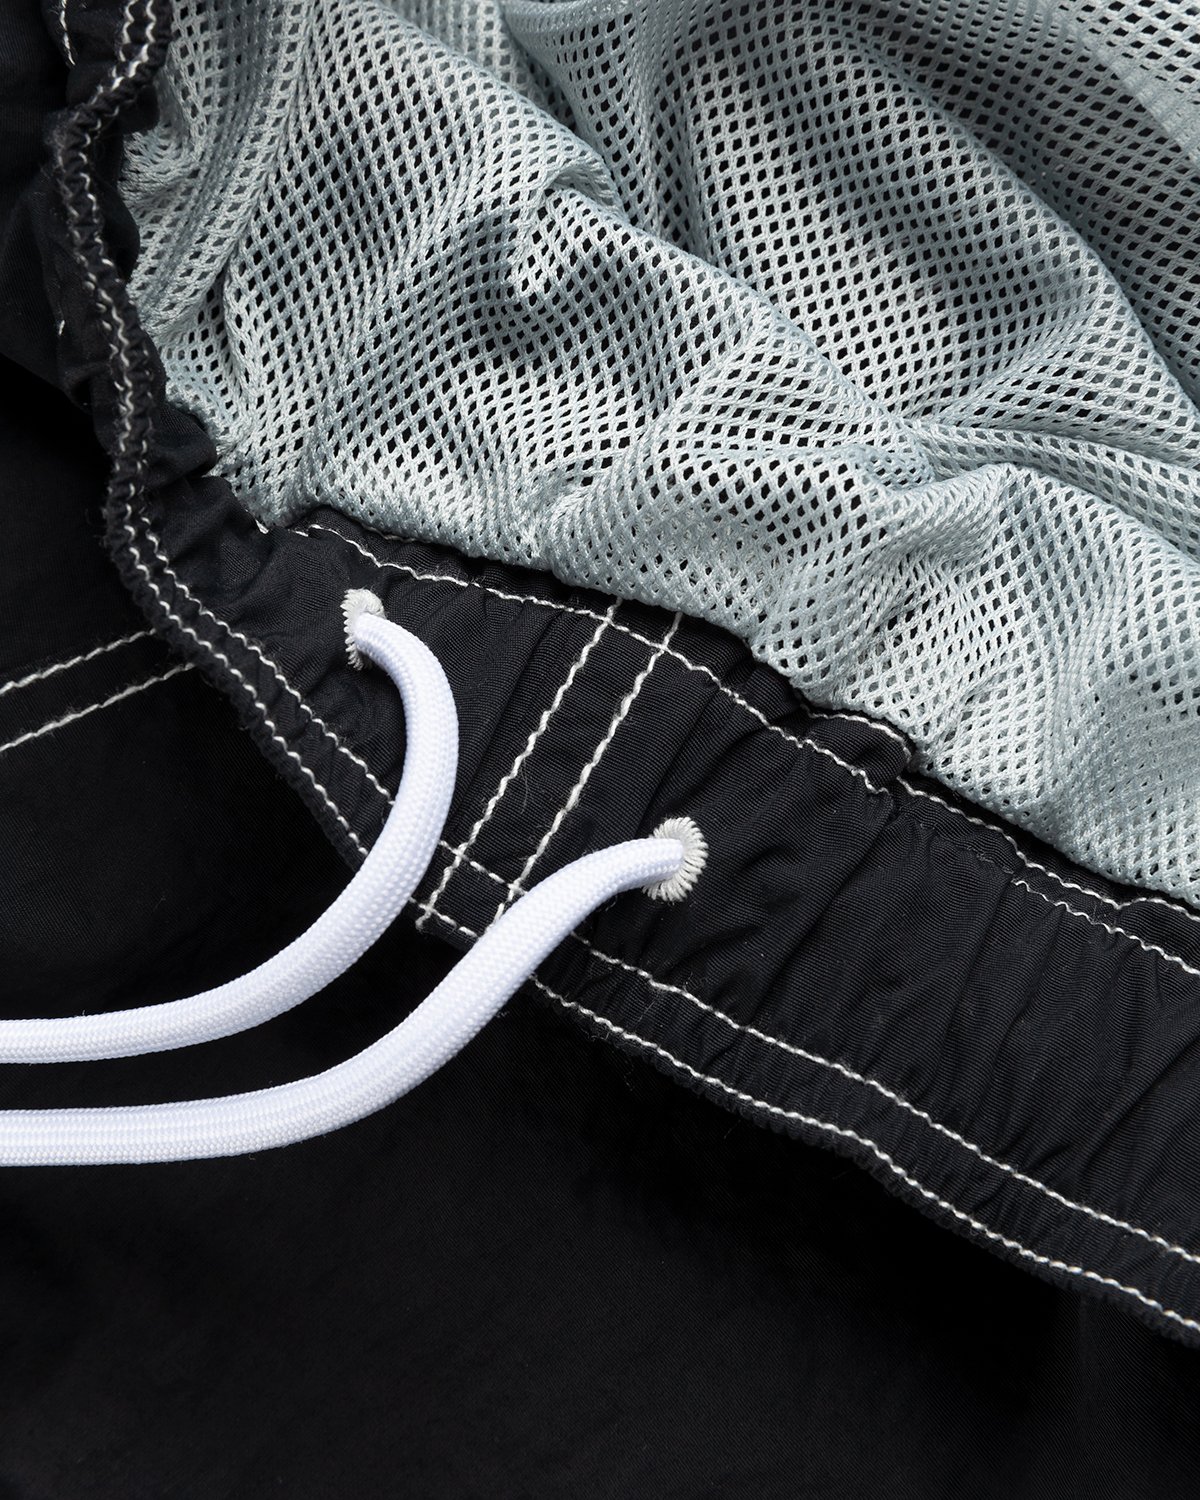 Highsnobiety - Contrast Brushed Nylon Water Shorts Black - Clothing - Black - Image 6